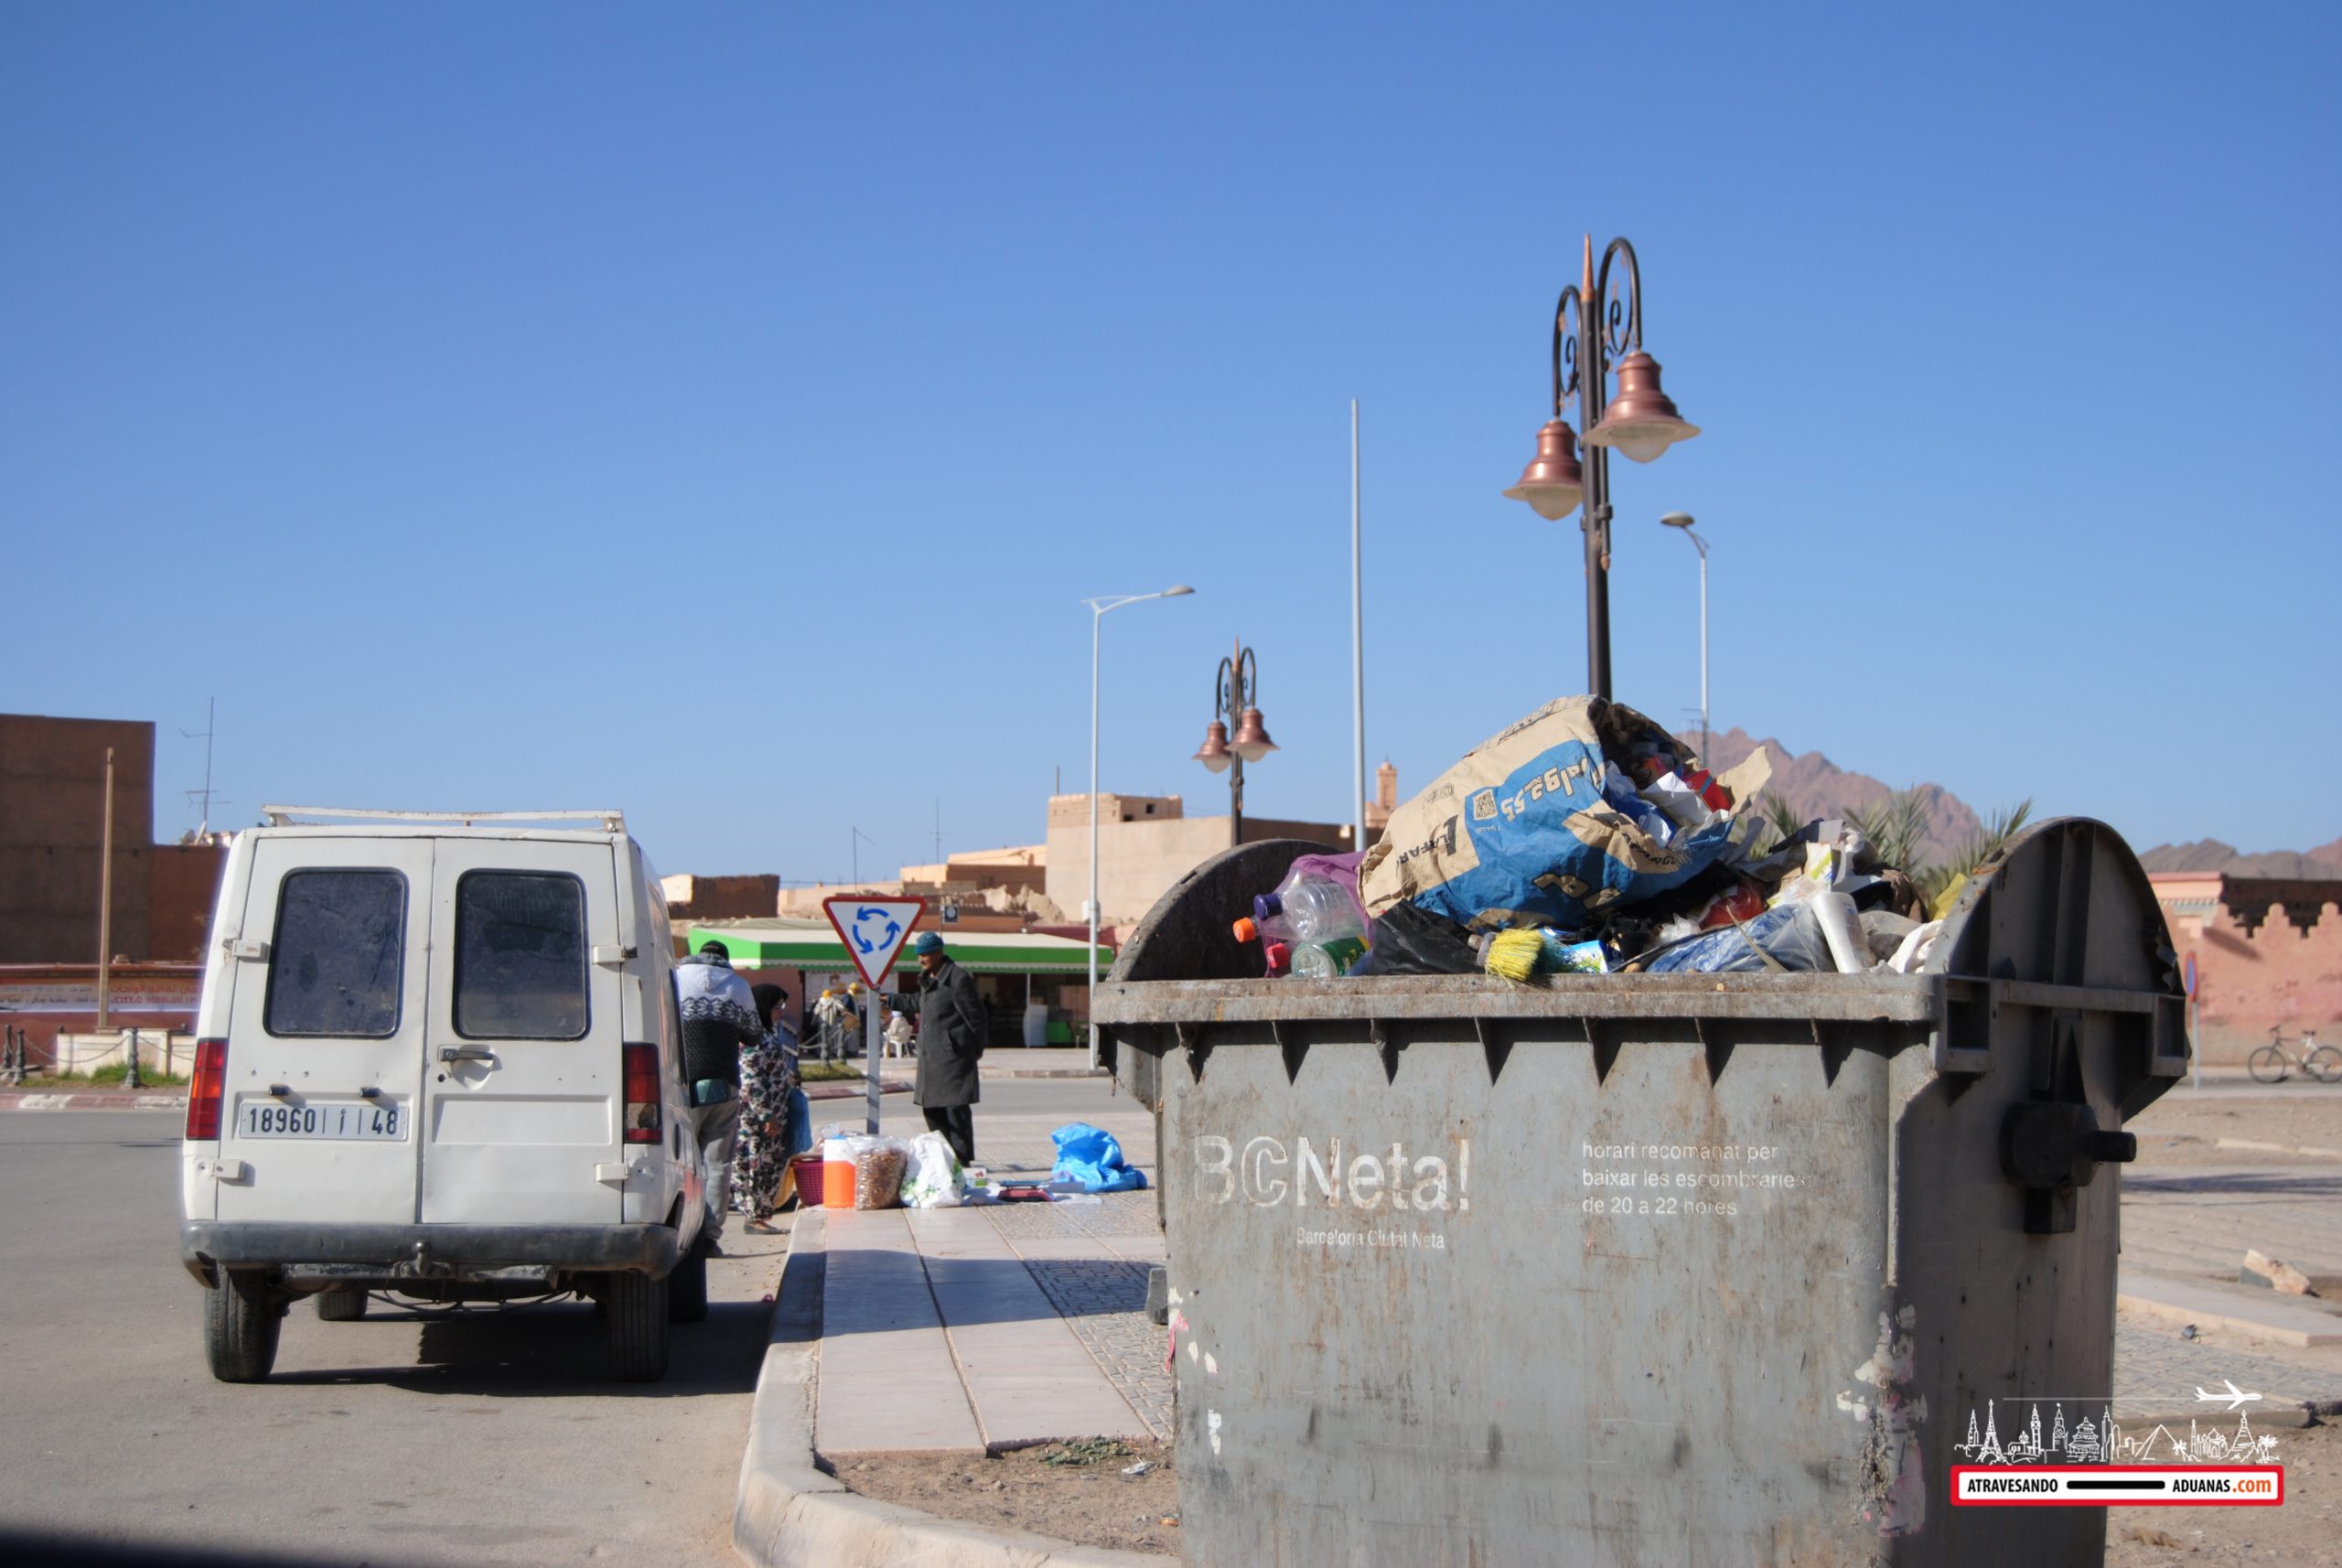 contenedor de barcelona en la ciudad de Figuig, Marruecos